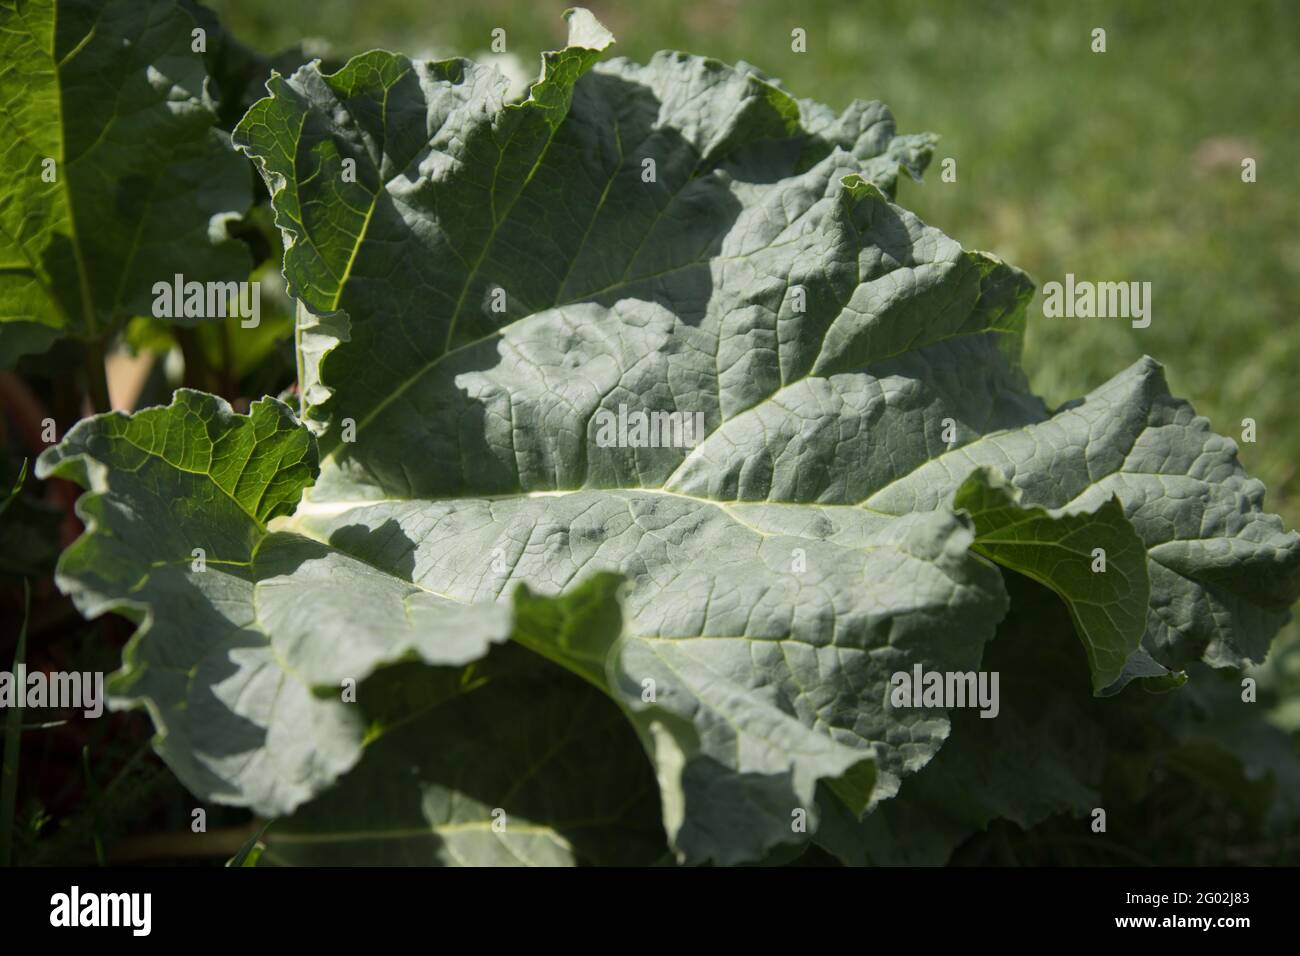 Nahaufnahme der Blätter der Rhabarberpflanze, die bei der Zubereitung gesunder Getränke verwendet wird. Stockfoto